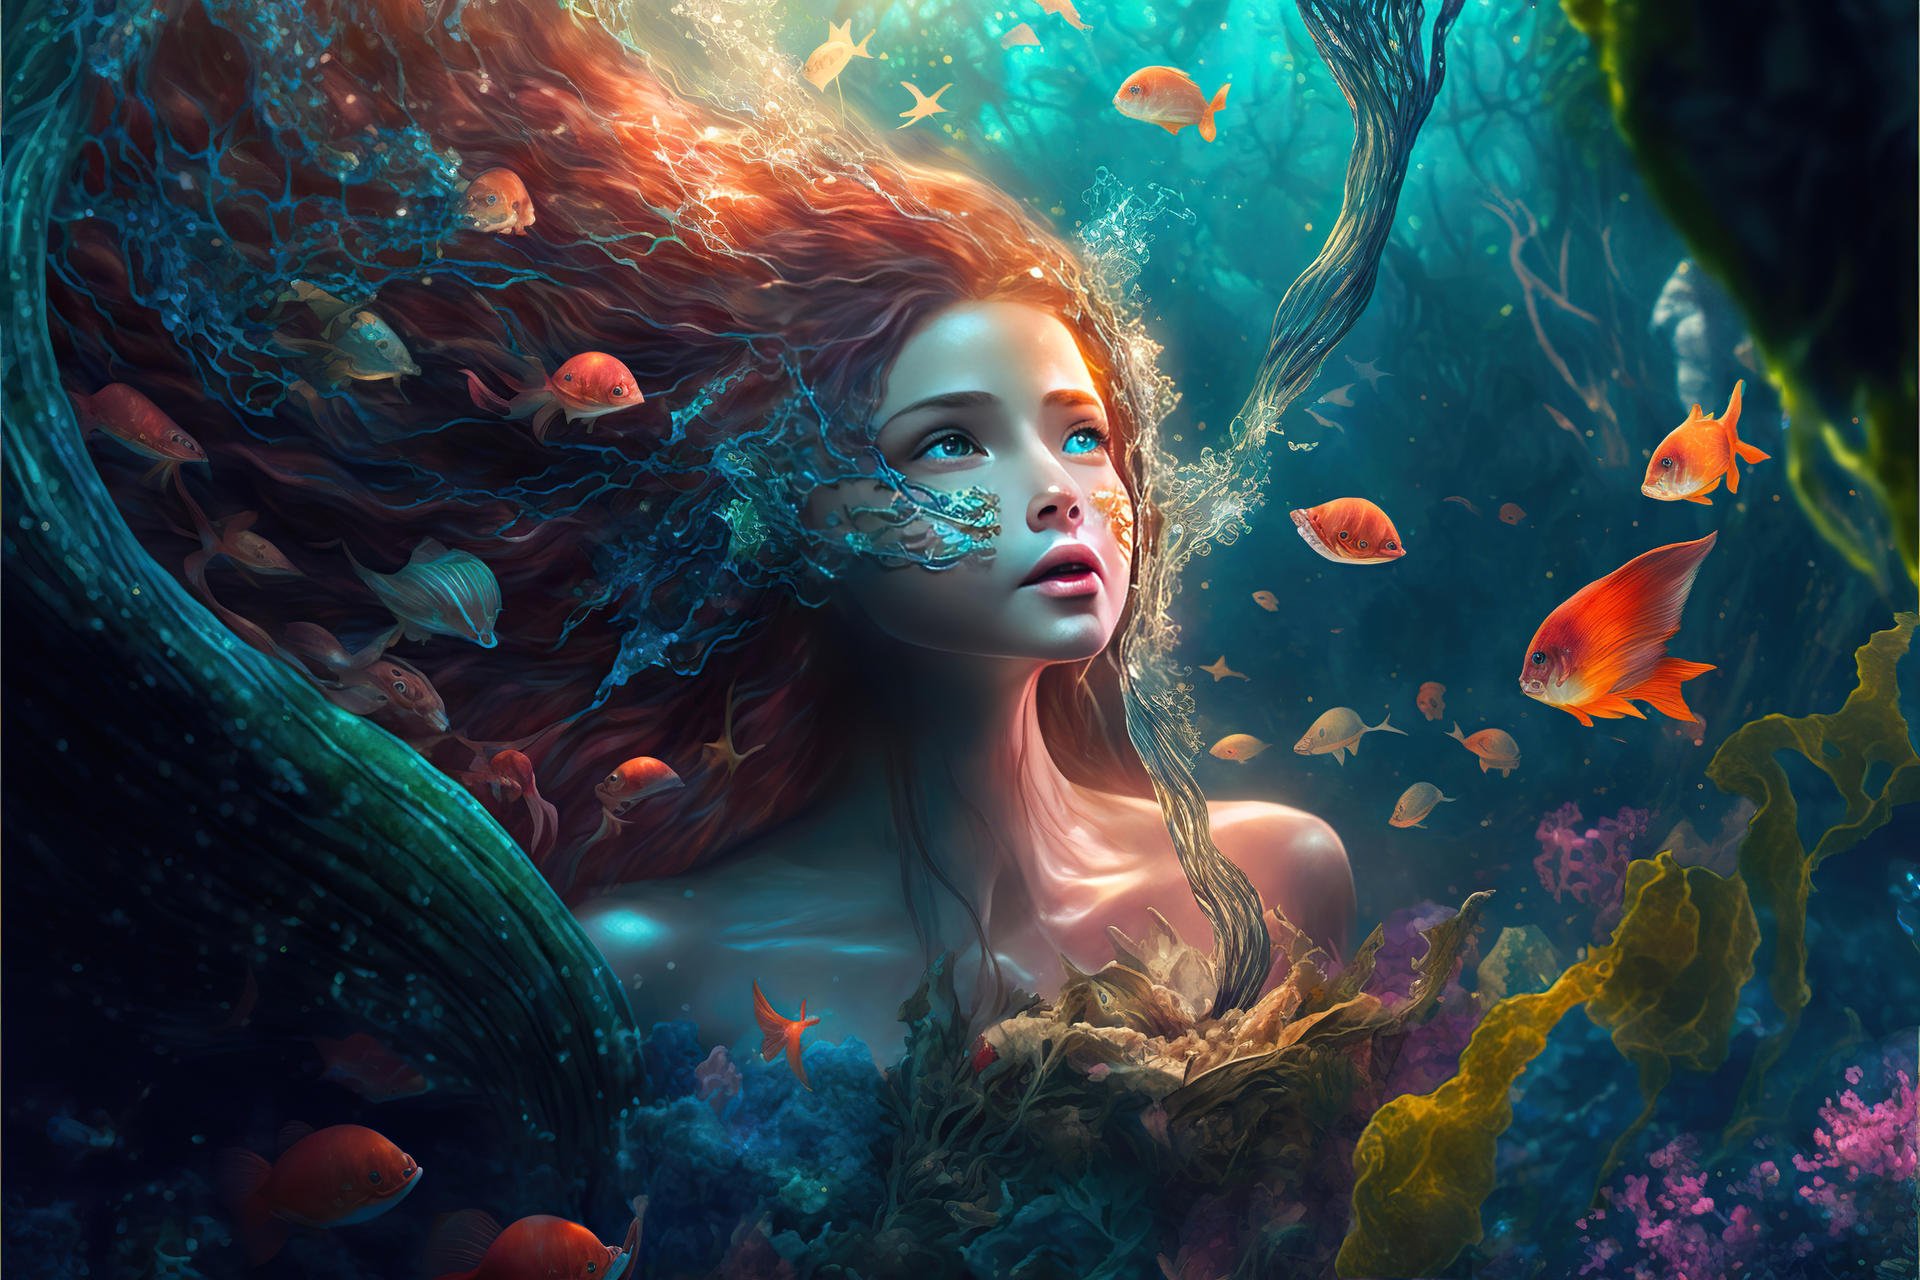 ai_art___mermaid_ii_by_koalafish_dfjfcz5-fullview